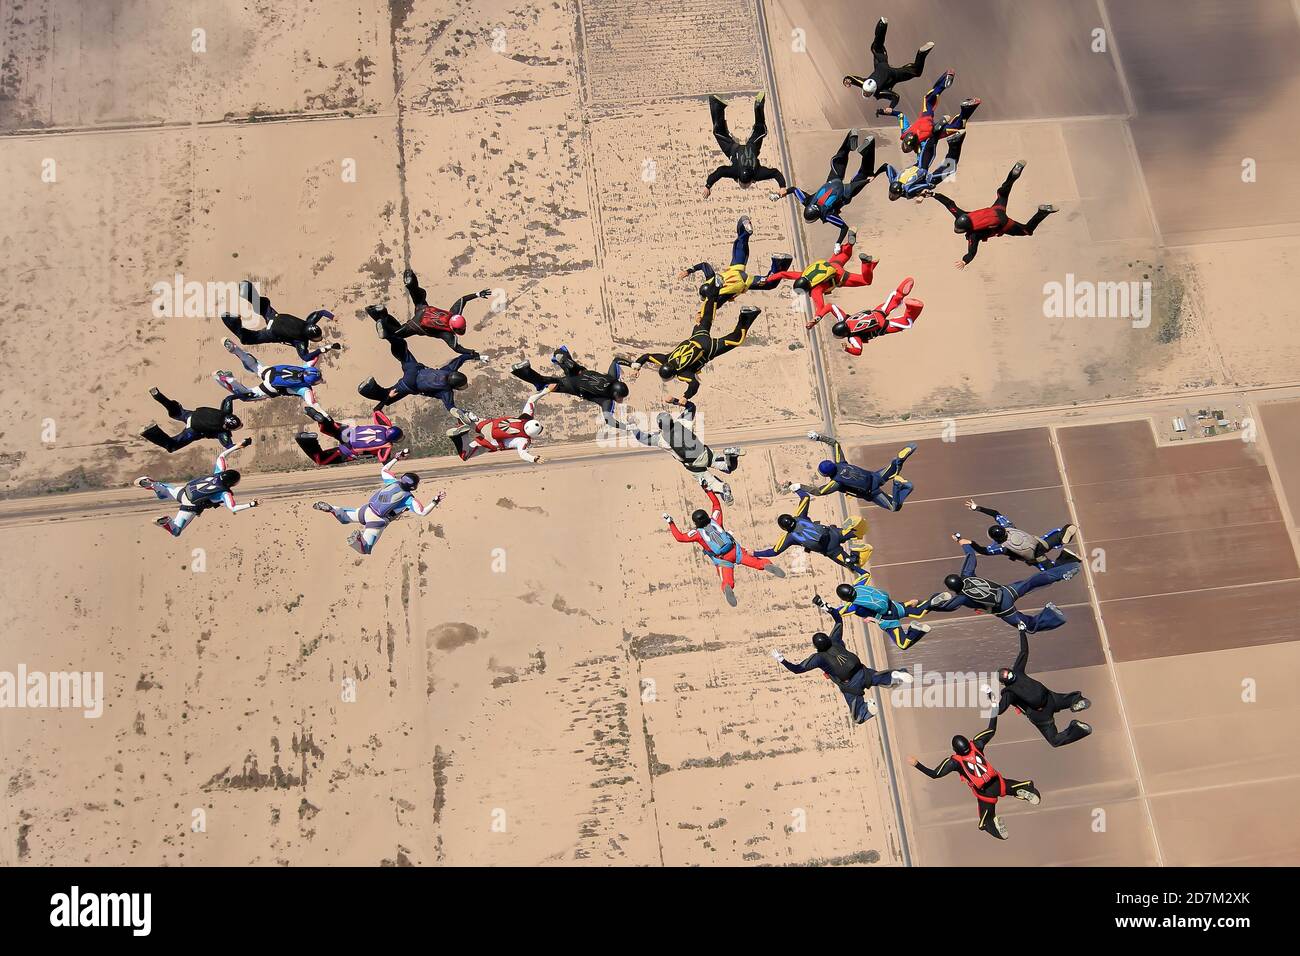 Eloy, Arizona, États-Unis. Un groupe de parachutistes sautent d'un avion d'entraînement pour battre le record sud-américain. Banque D'Images